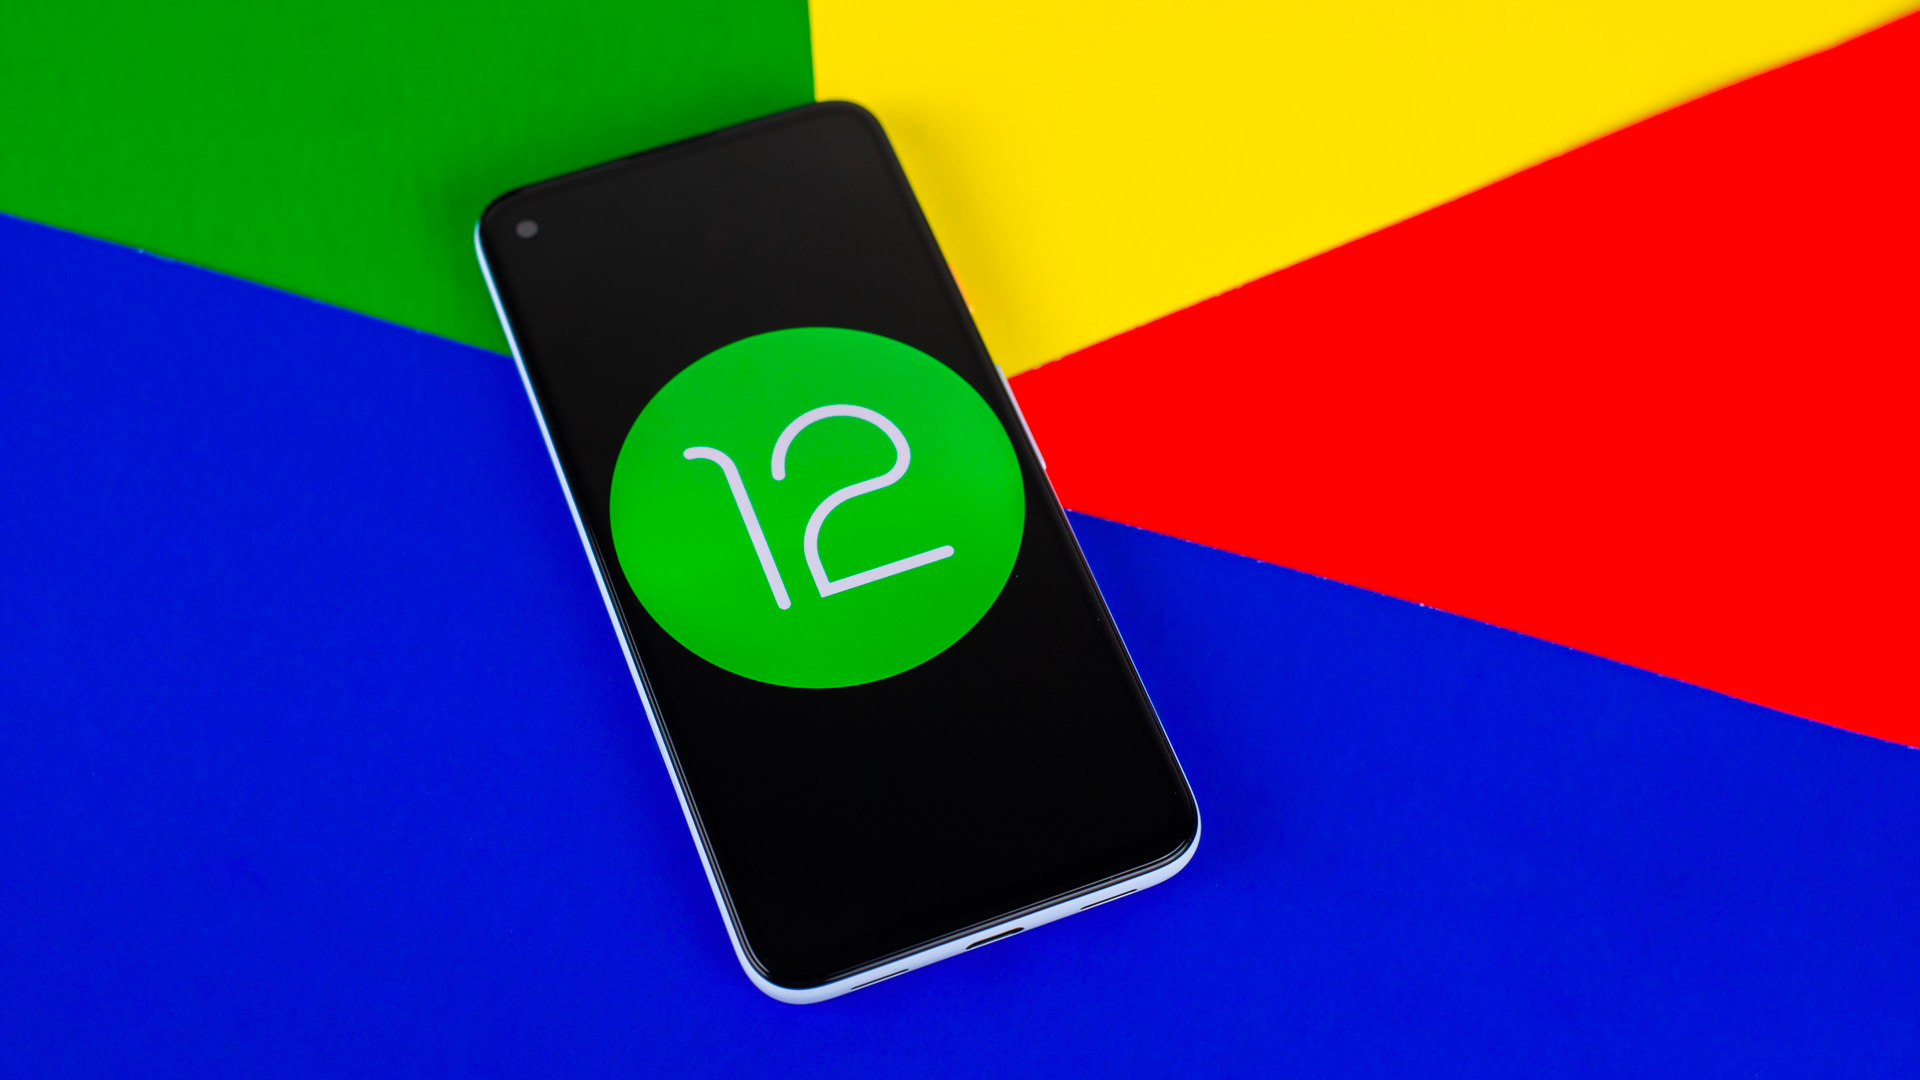 Вышла первая бета-версия Android 12: главные отличия и сходства с iOS 14 